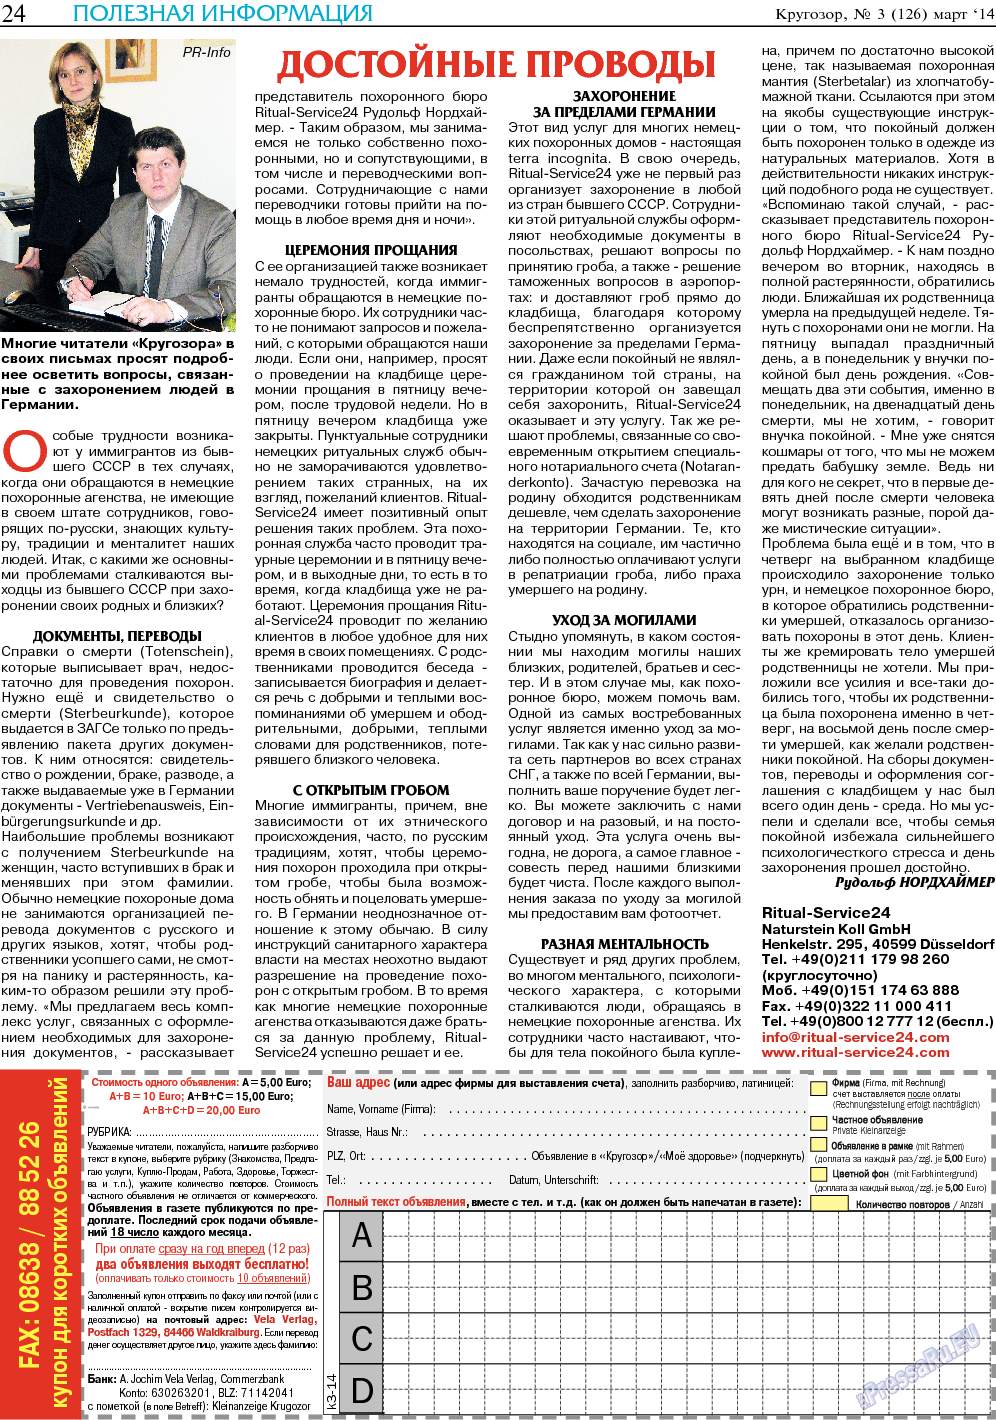 Кругозор (газета). 2014 год, номер 3, стр. 24